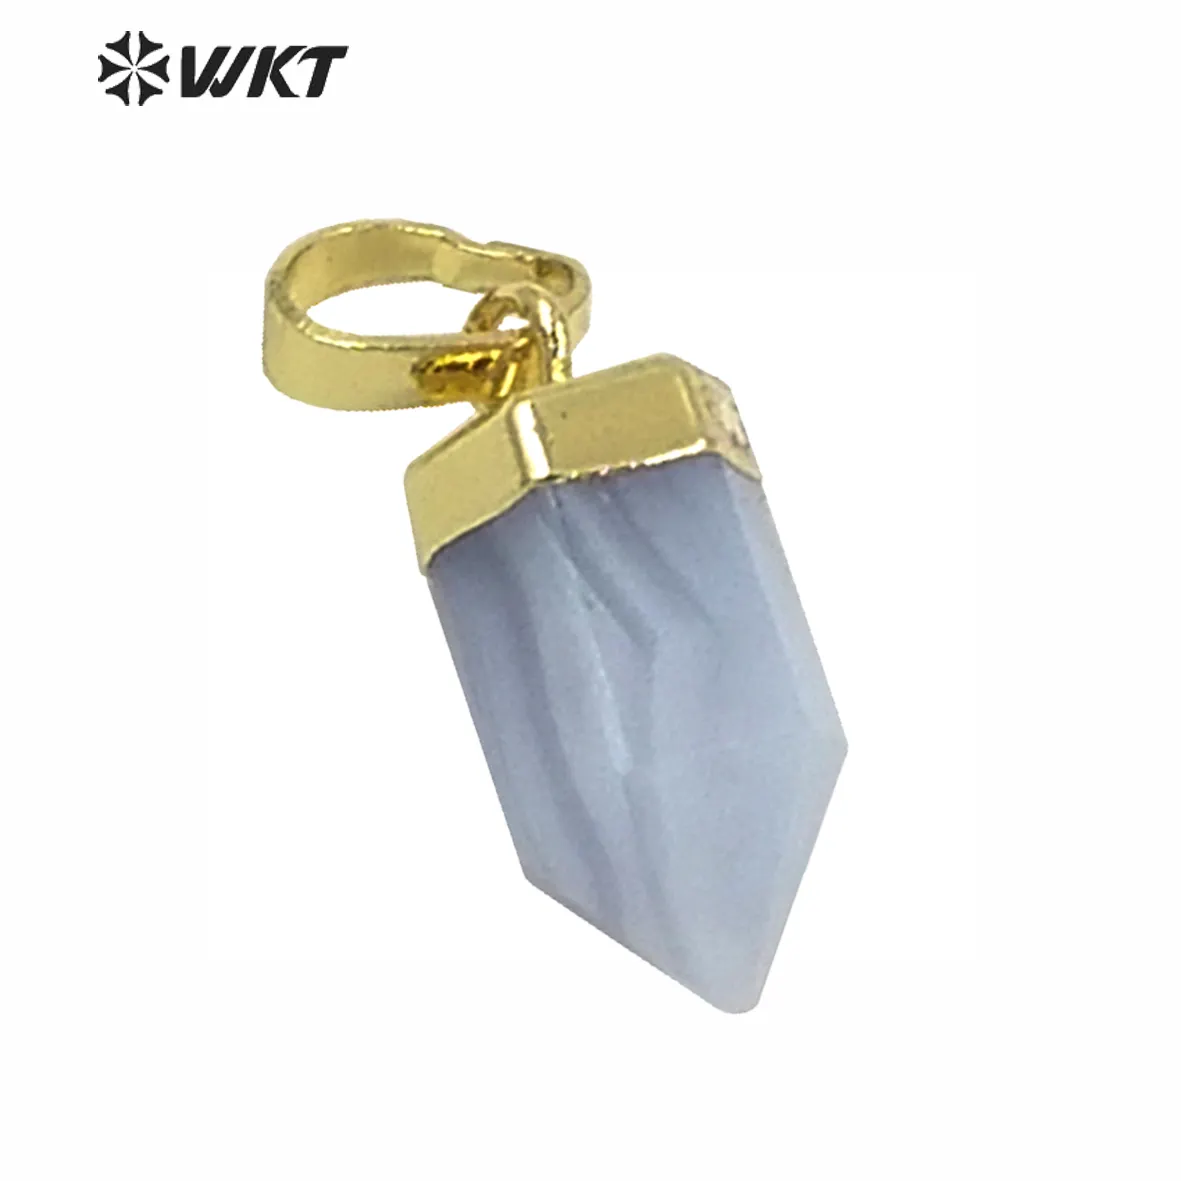 WT-P1334 WKT оптовая продажа в форме пули, крошечные Изысканный Синий Агат 24k, покрыто настоящим золотом, серебром, натуральный камень кулон